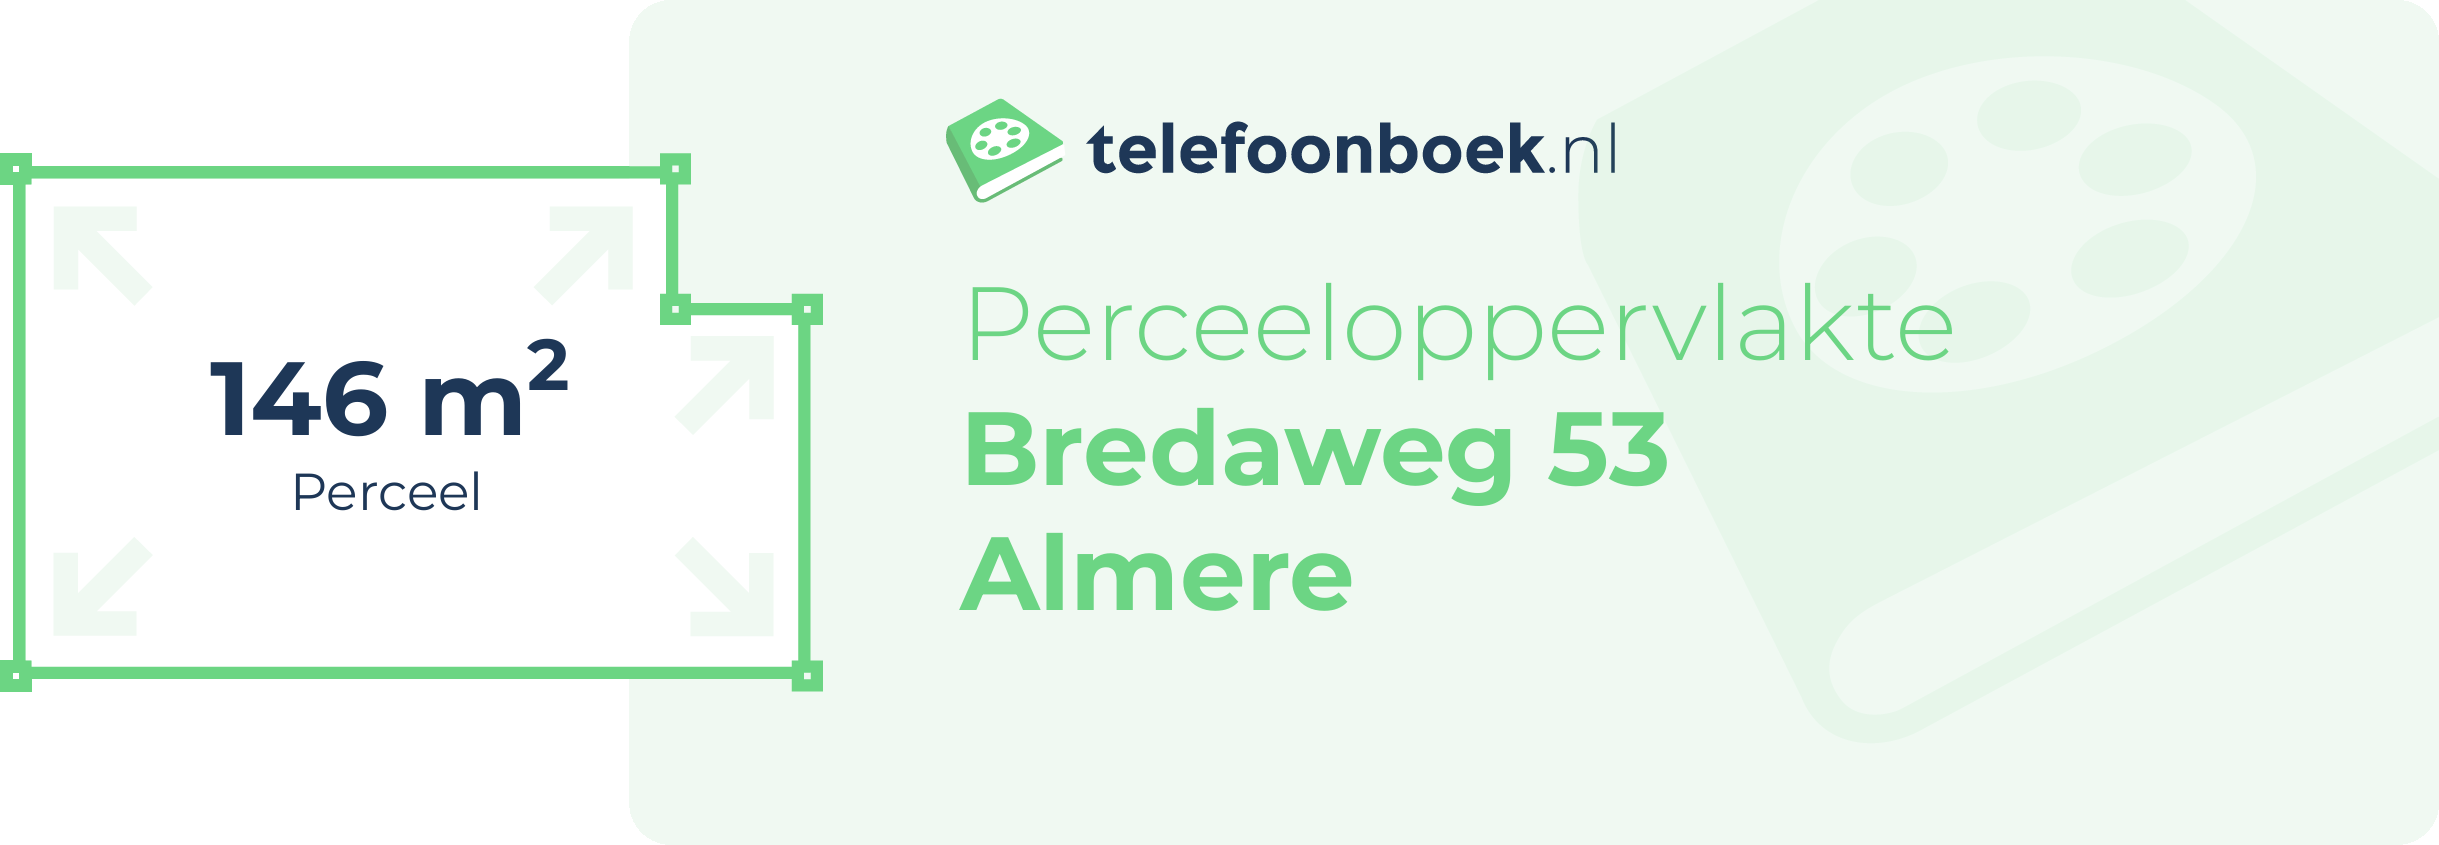 Perceeloppervlakte Bredaweg 53 Almere